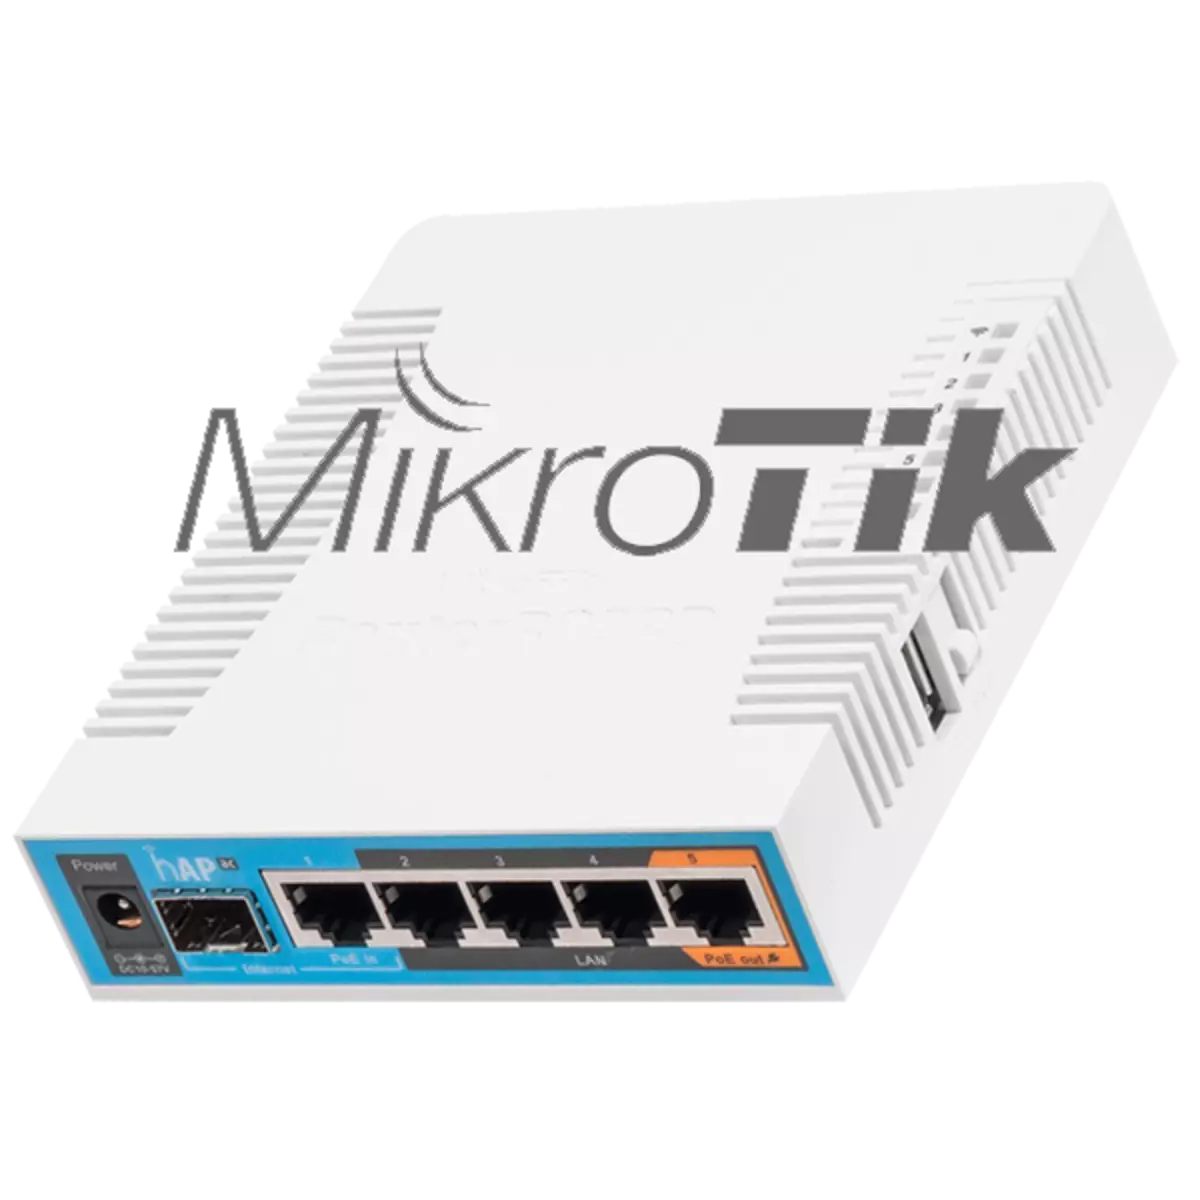 Configurando o router Mikrotik